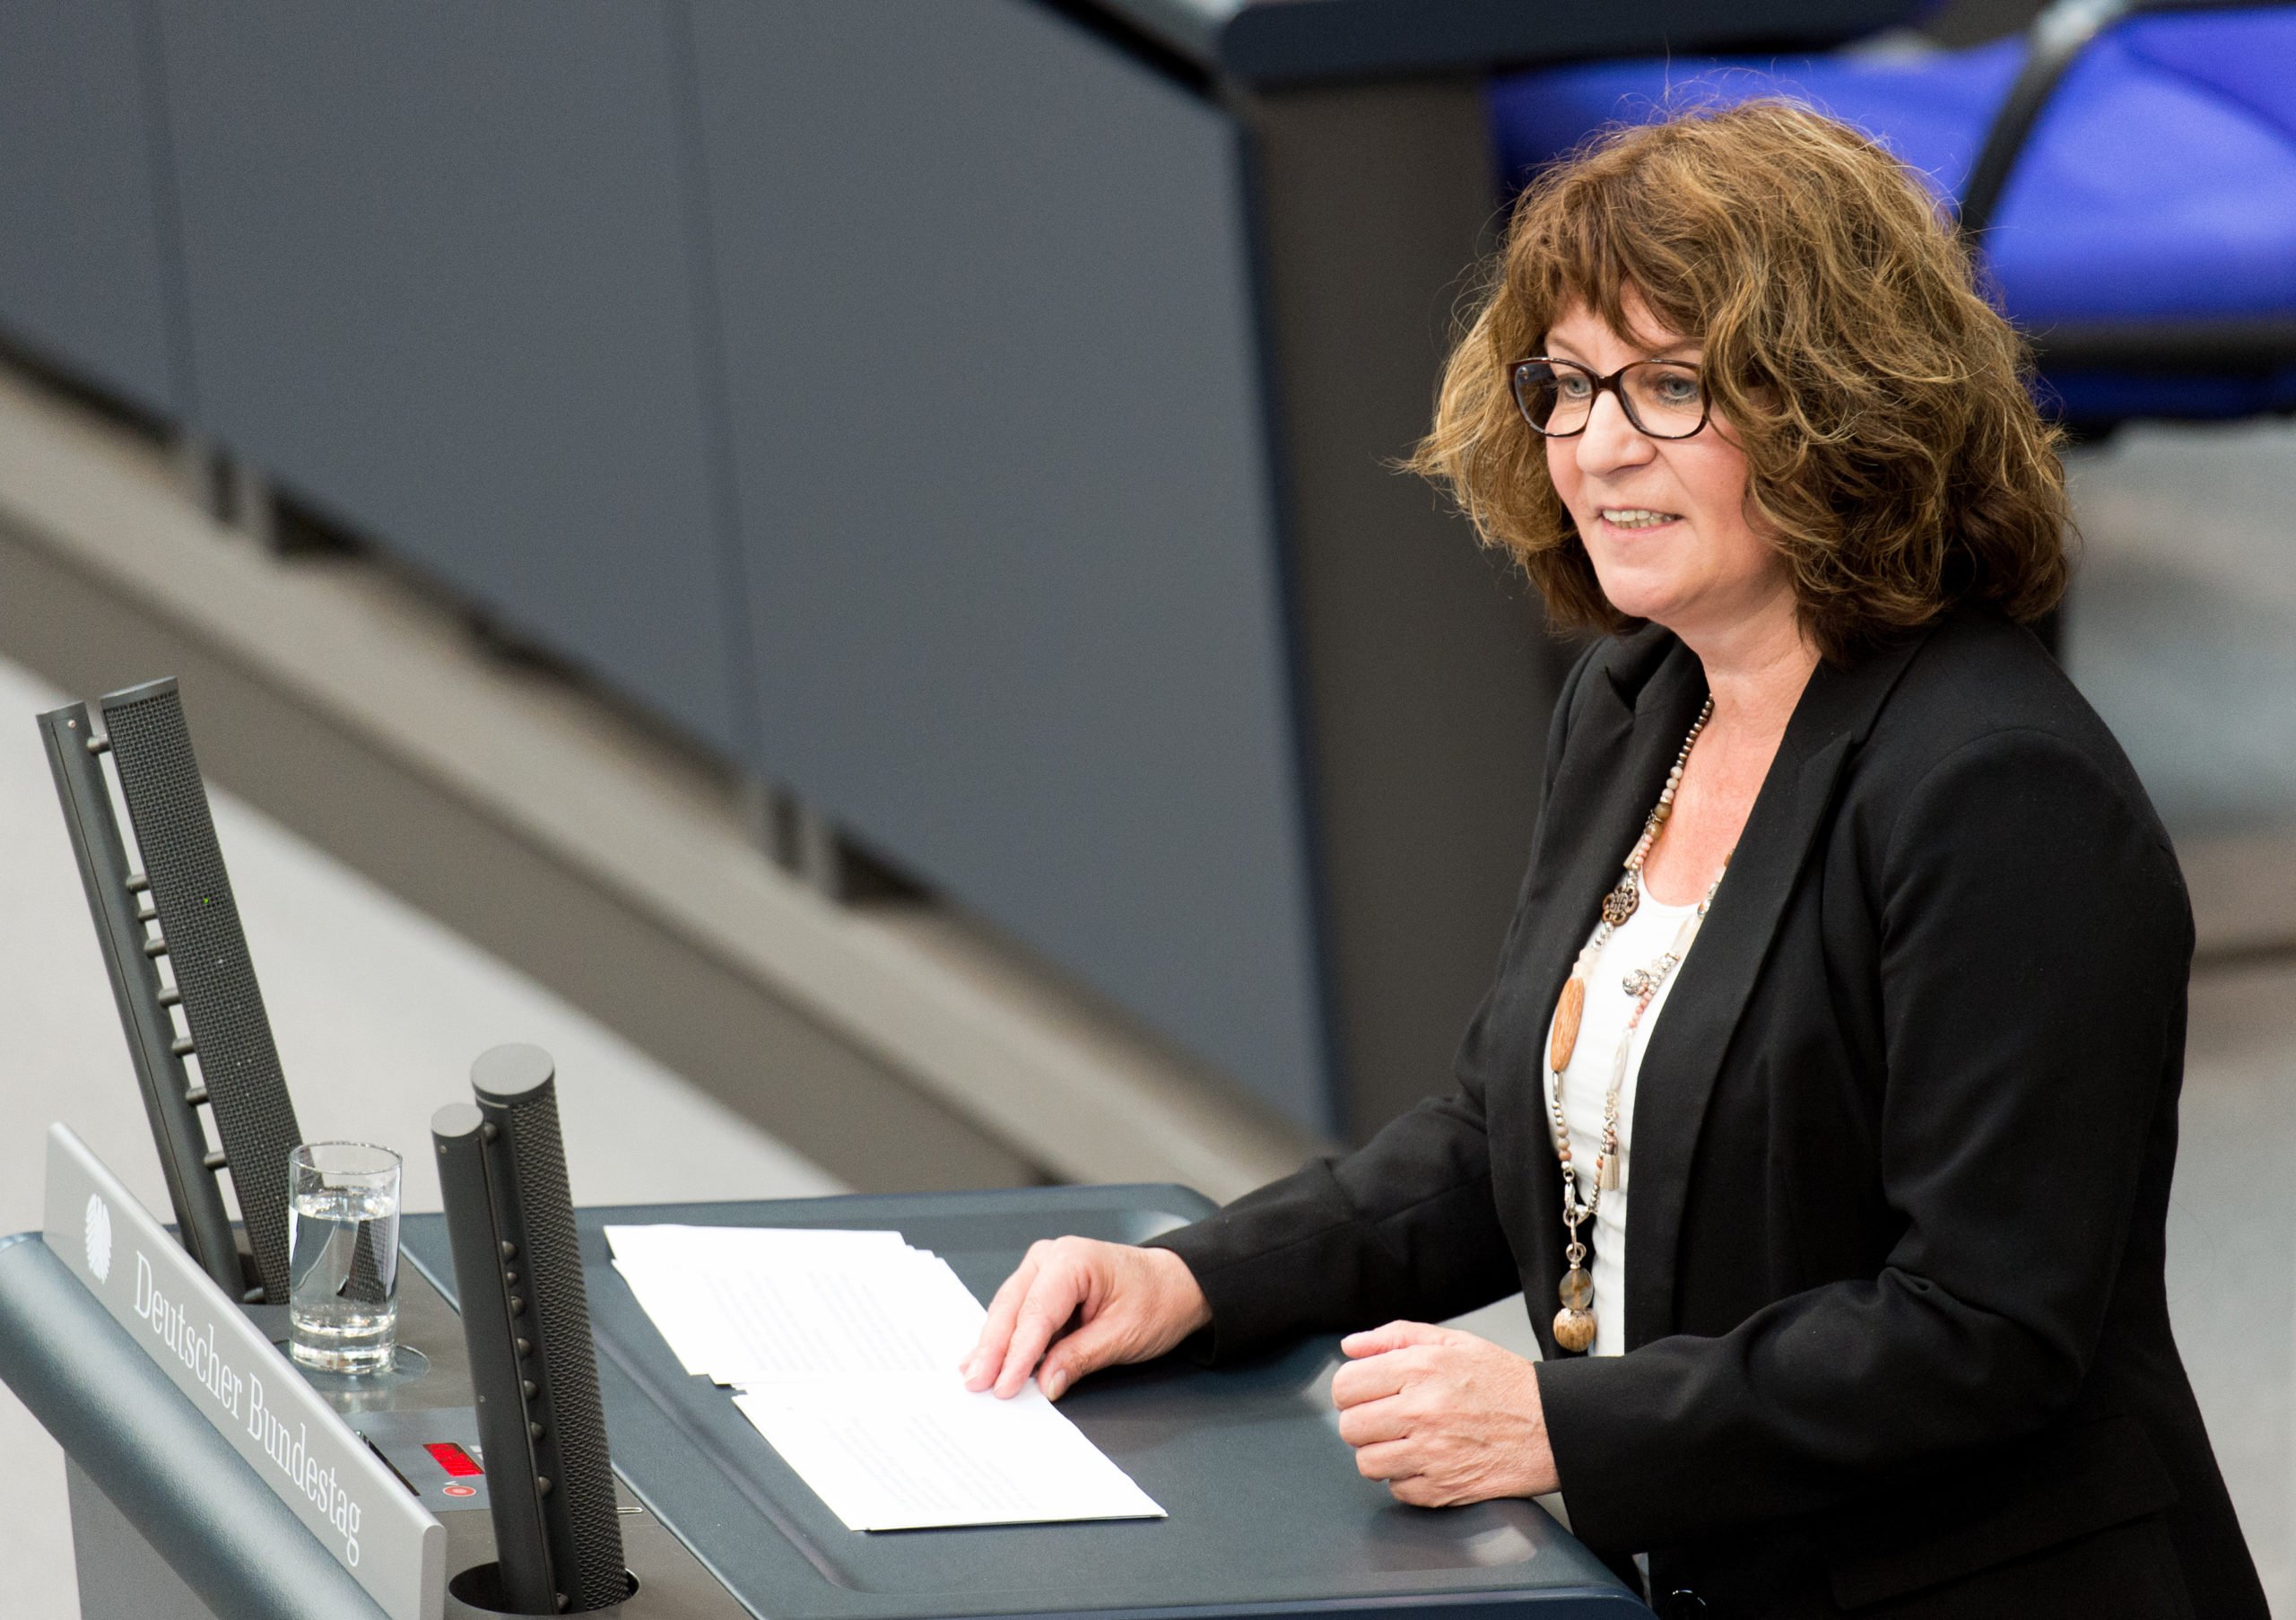 Martina Stamm-Fibich (SPD) gives a speech in parliament